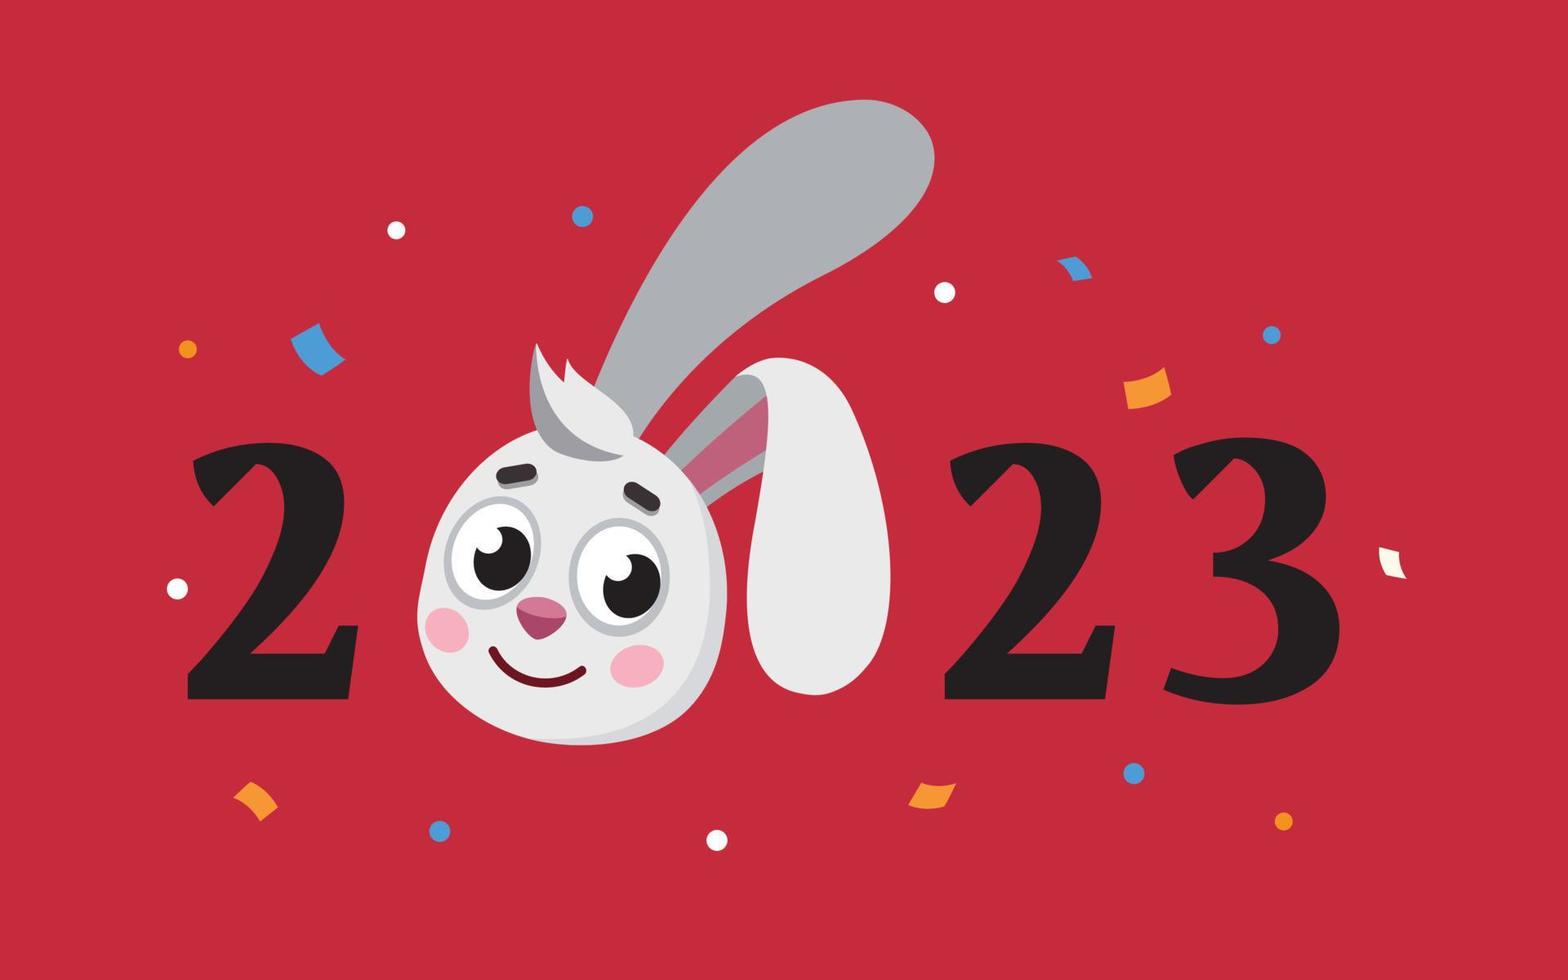 ano do zodíaco do coelho. Texto de 2023 anos com cabeça de coelho e confetes, cartão postal de ano novo chinês. símbolo do ano novo lunar. vetor